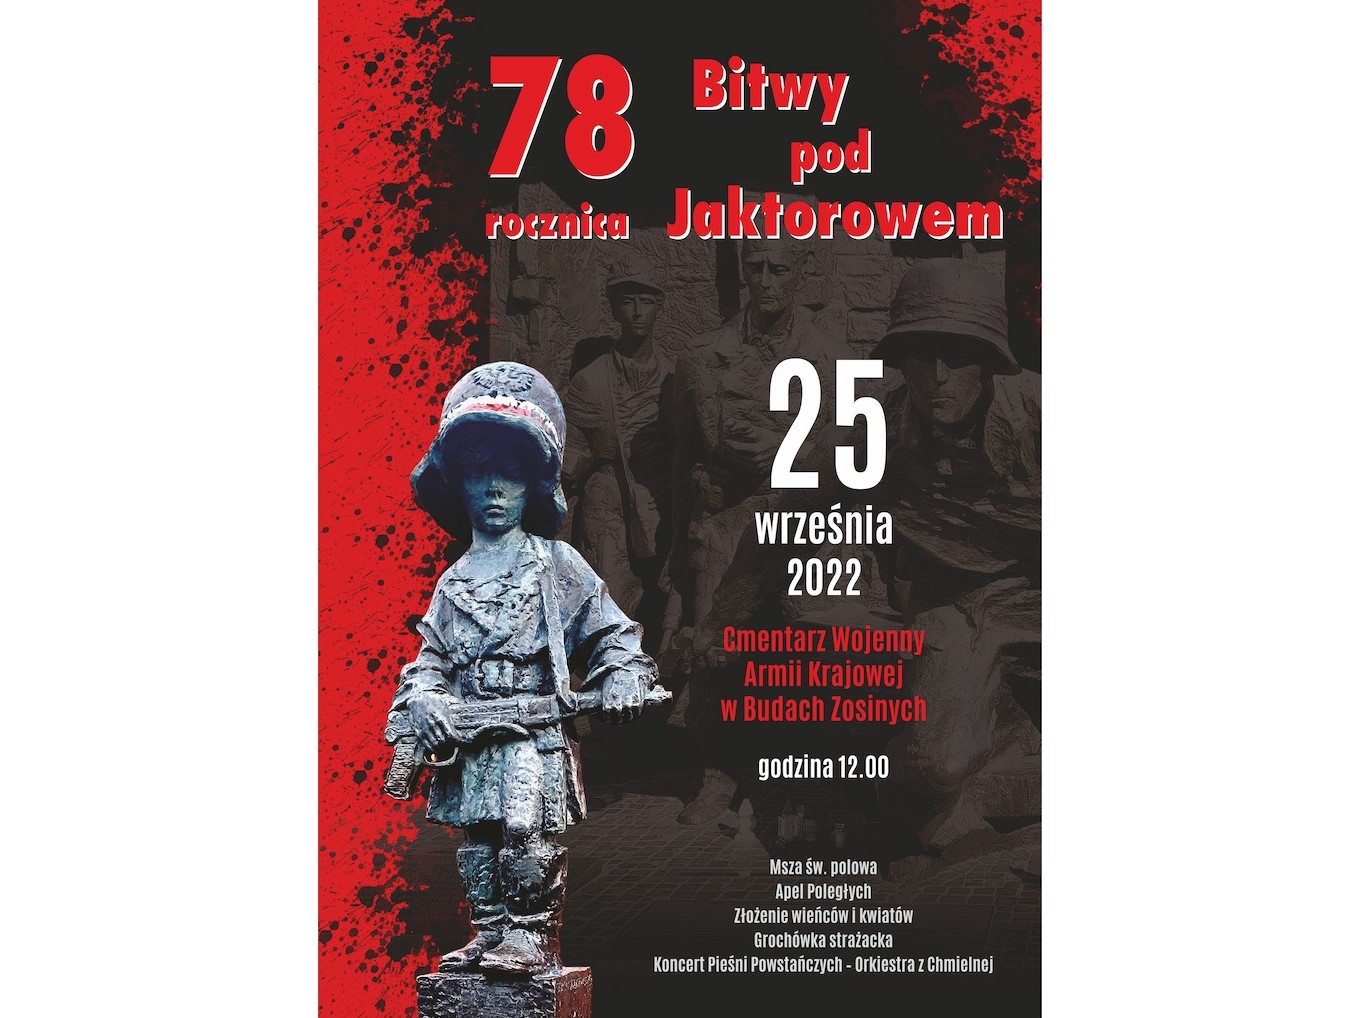 Ikona do artykułu: Zaproszenie na obchody 78. rocznicy Bitwy pod Jaktorowem